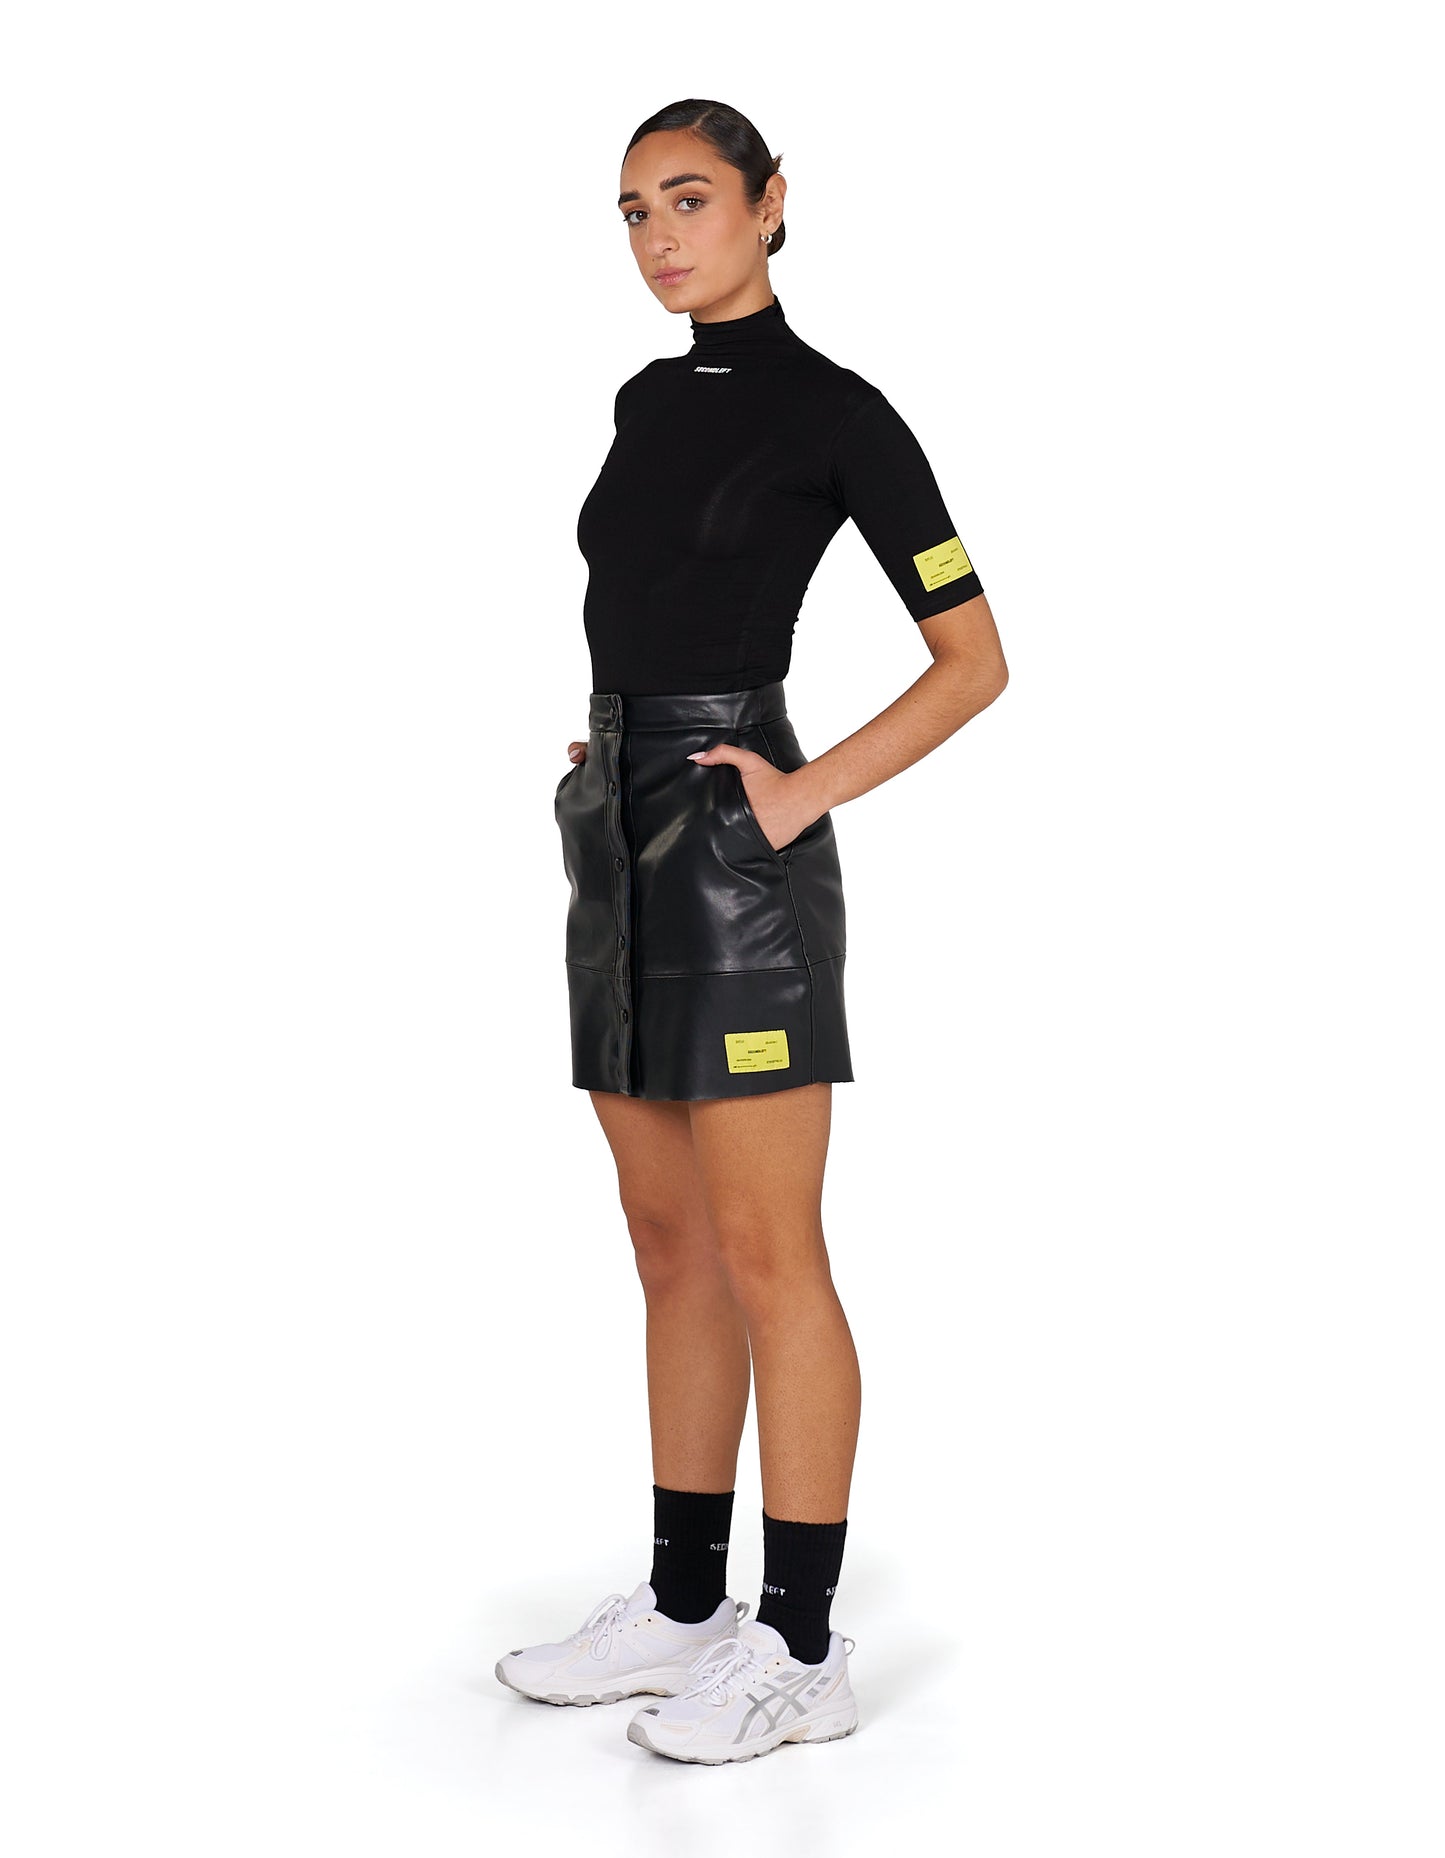 S1 Faux Skirt Short - Black